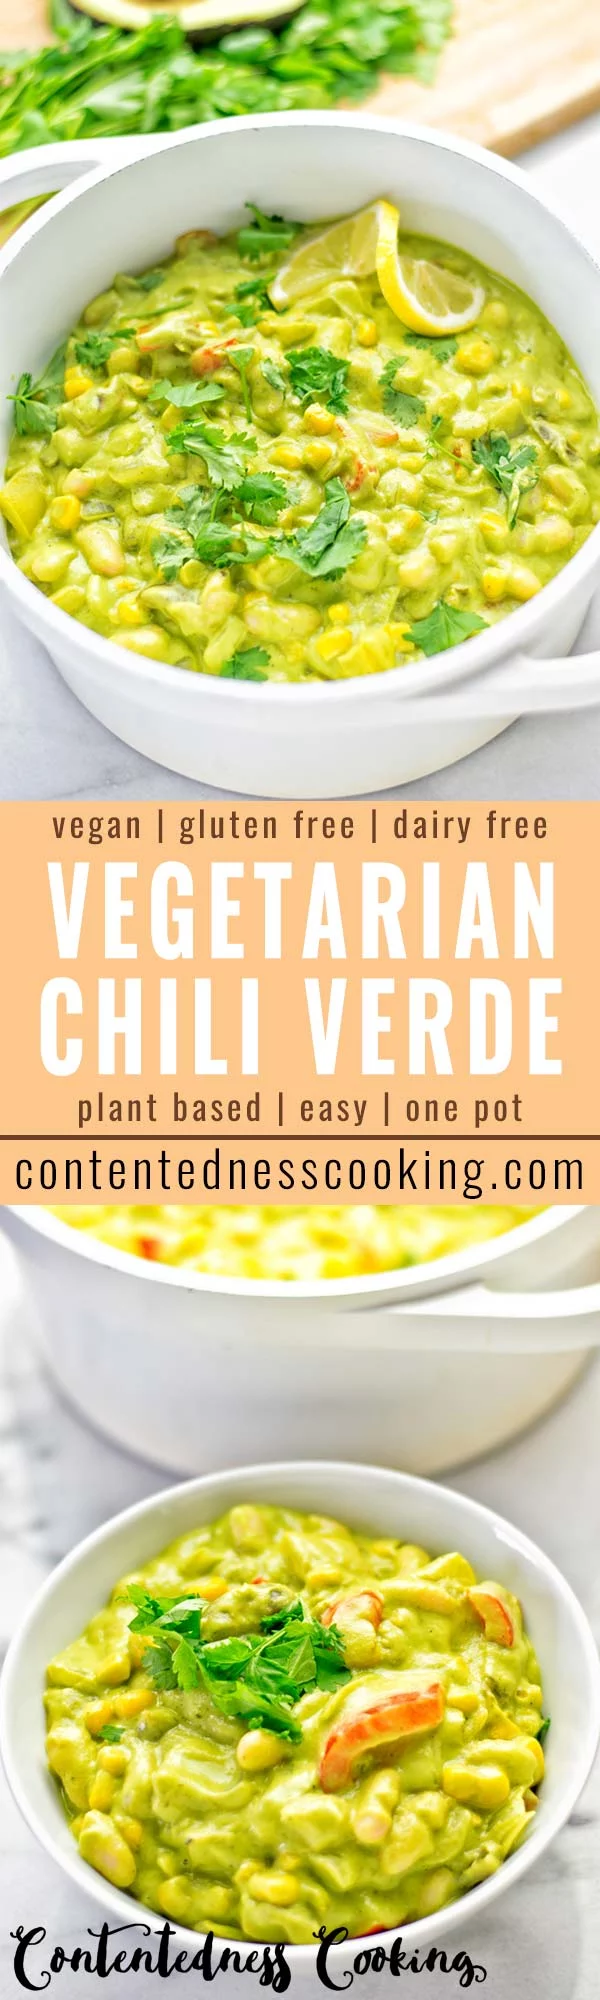 Vegetarian Chili Verde | #vegan #glutenfree #contentednesscooking #plantbased #dairyfree